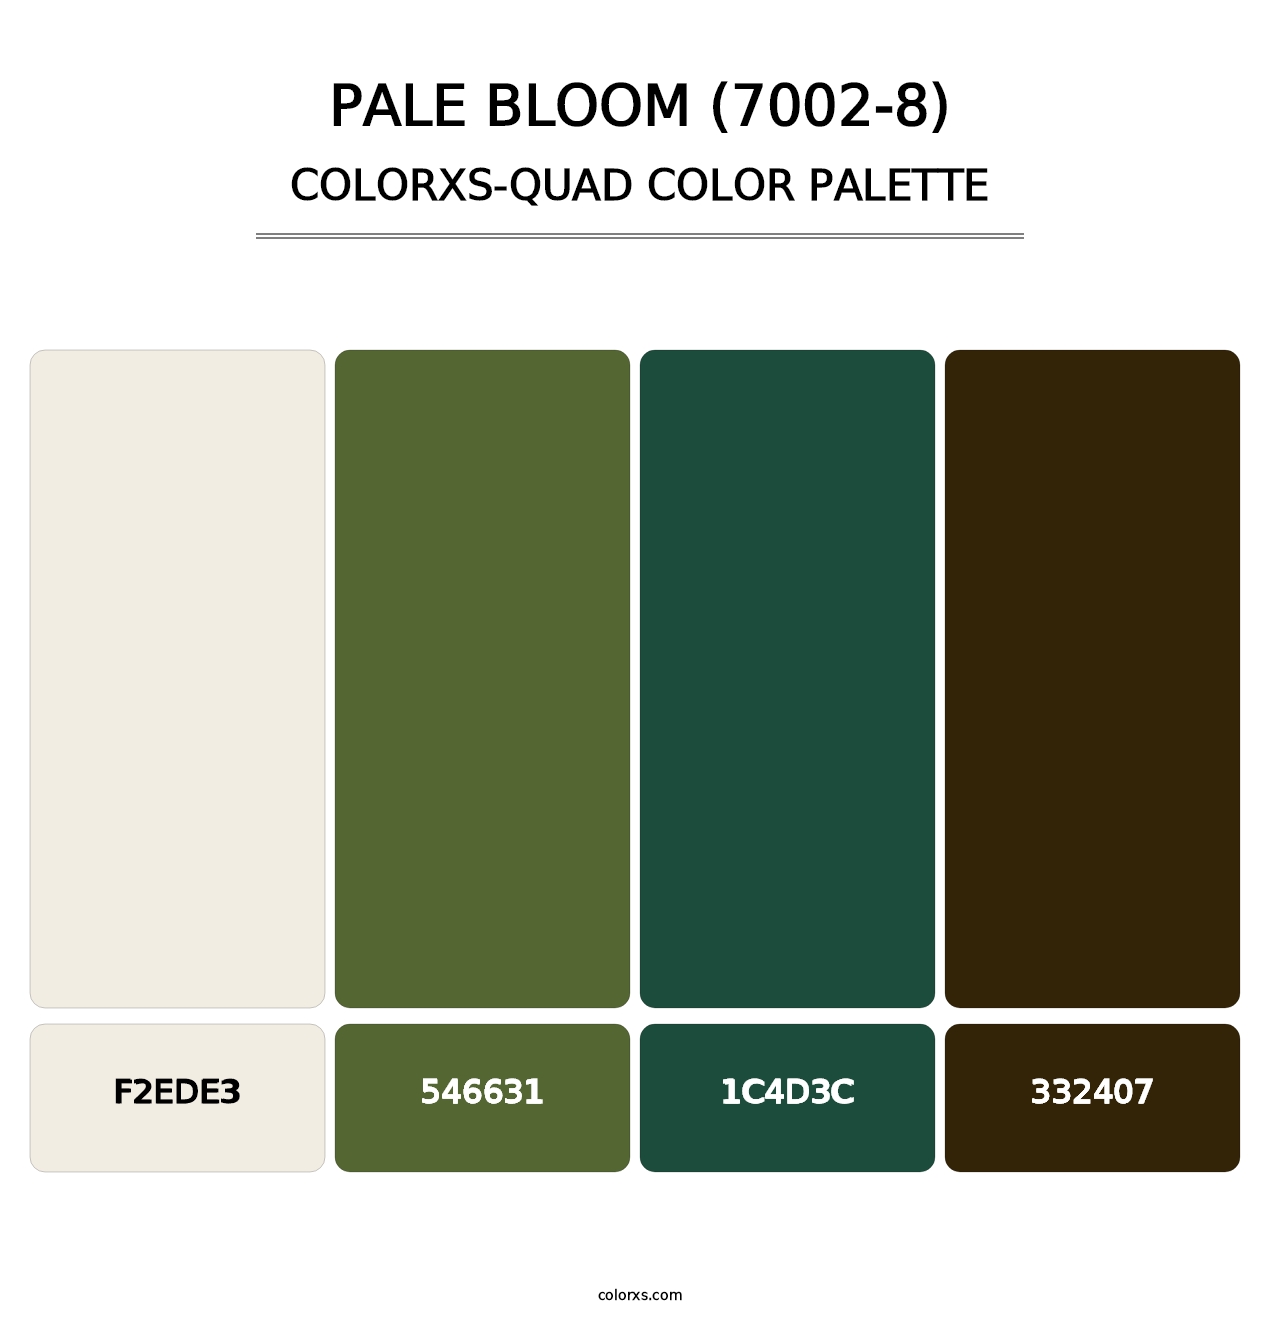 Pale Bloom (7002-8) - Colorxs Quad Palette